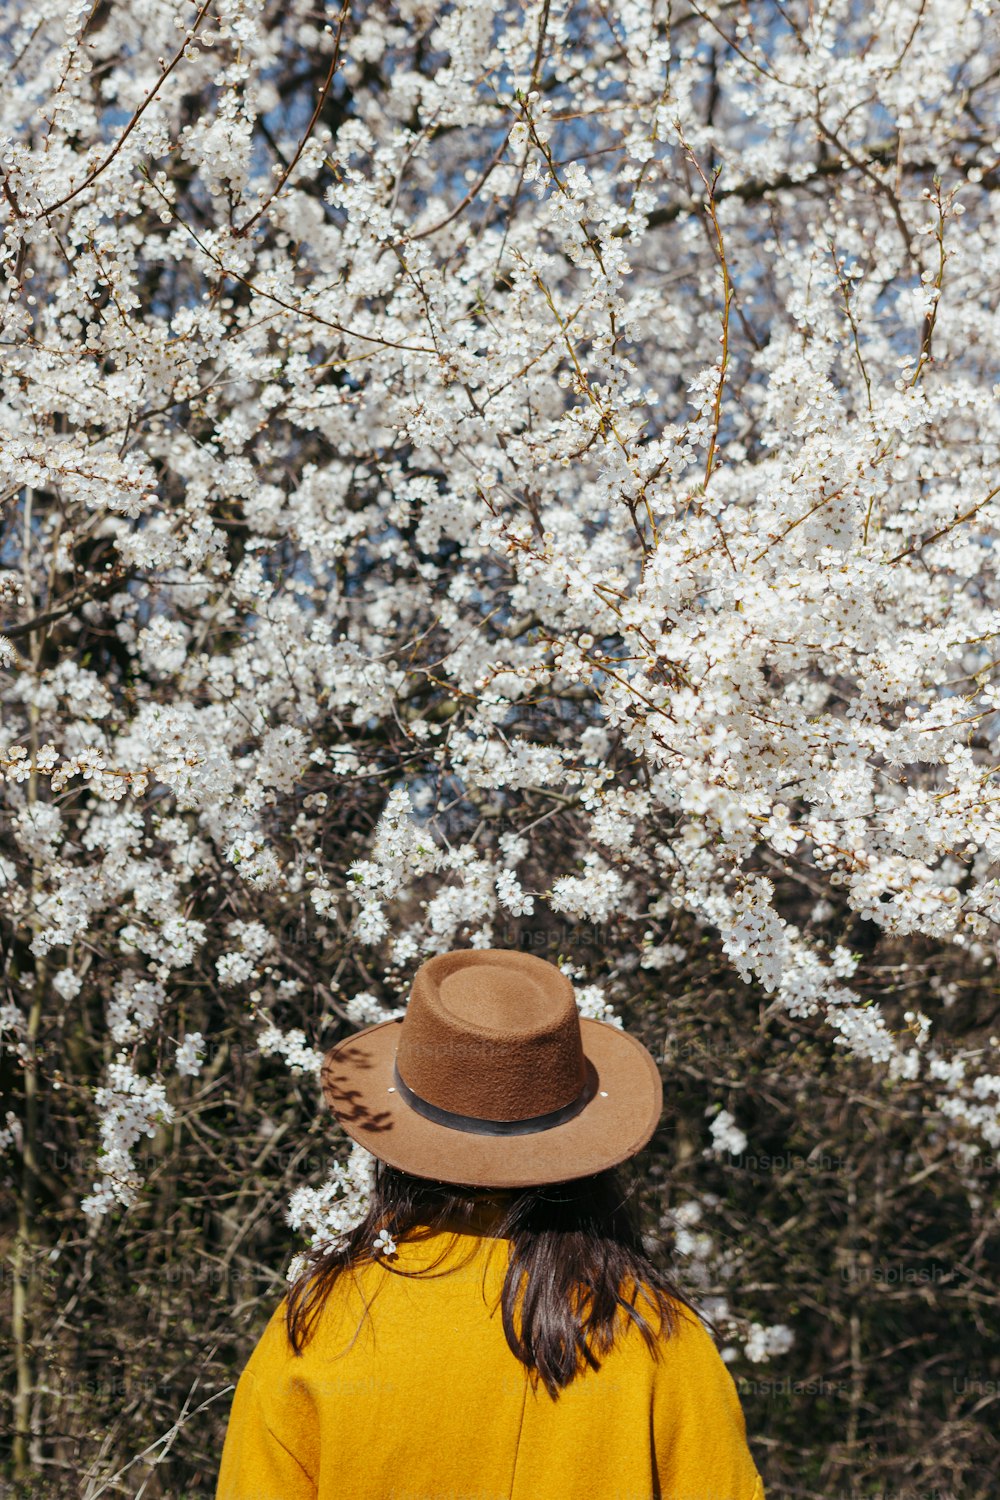 Femme élégante au chapeau posant sensuellement parmi les branches de cerisier en fleurs par une journée ensoleillée de printemps, vue de dos. Moment calme et tranquille. Femme à la mode en veste jaune embrassant dans des fleurs blanches